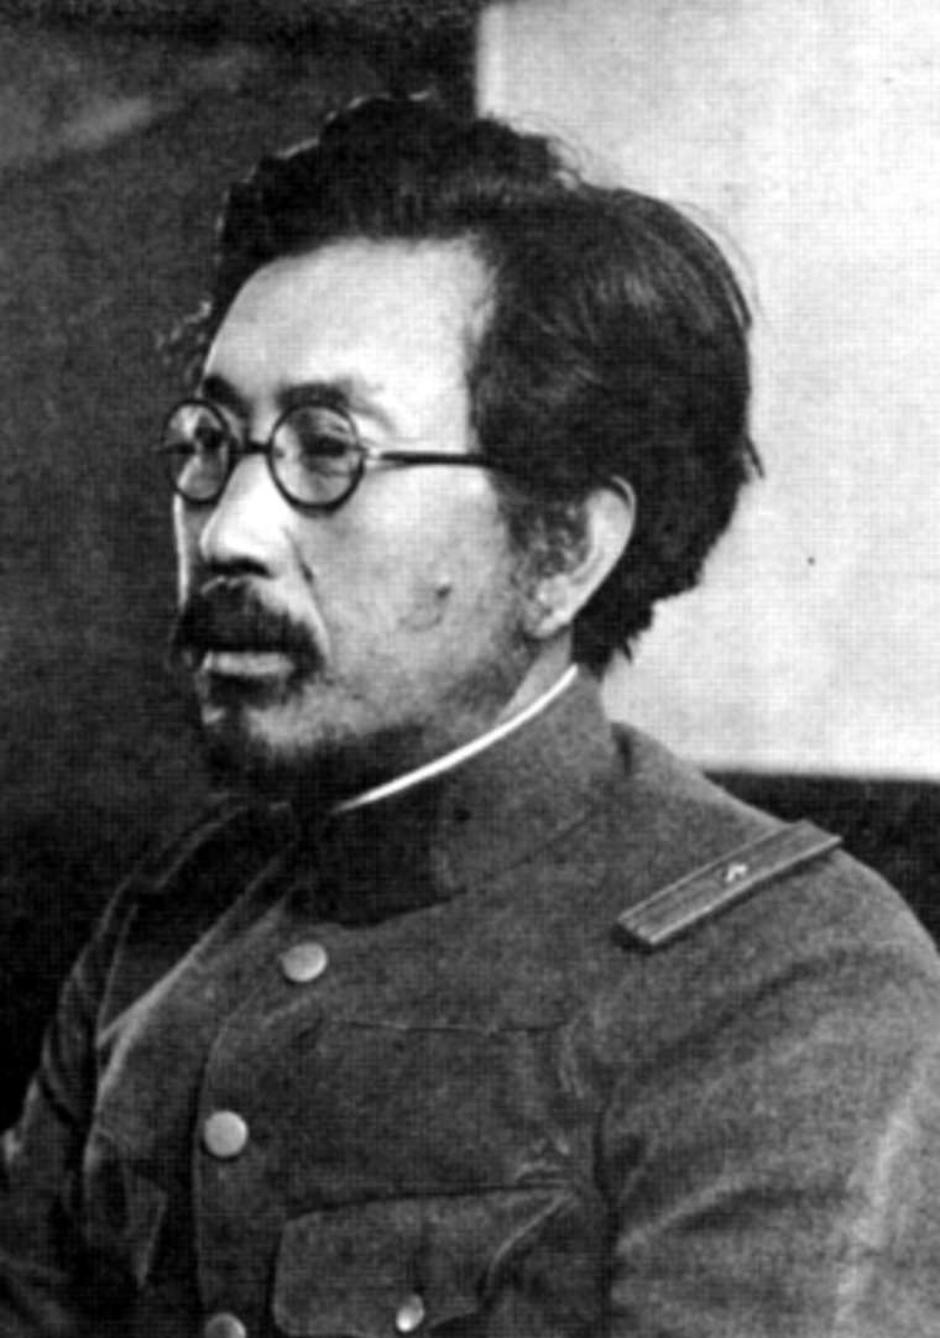 Shiro Ishii | Author: Wikipedia